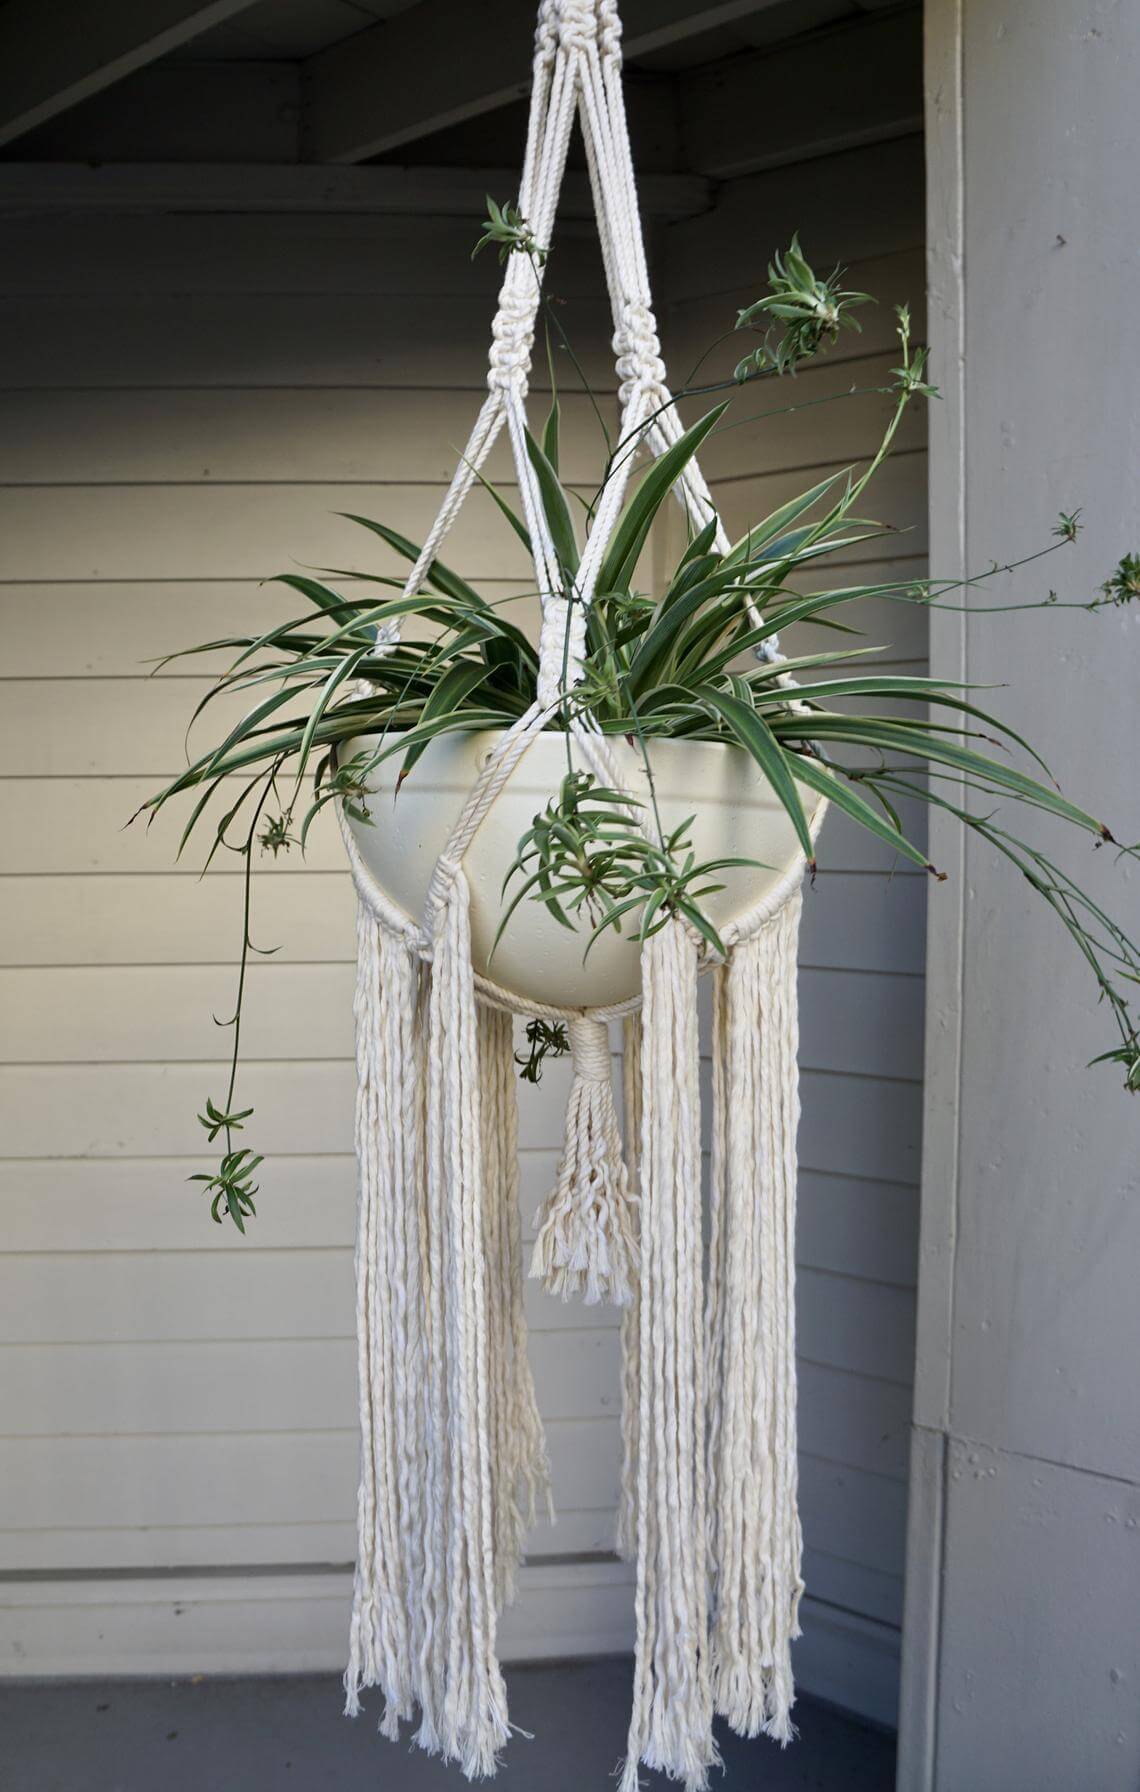 36 Types Macrame Plant Hangers Indoor Outdoor Hanging Baskets for Garden Plants 